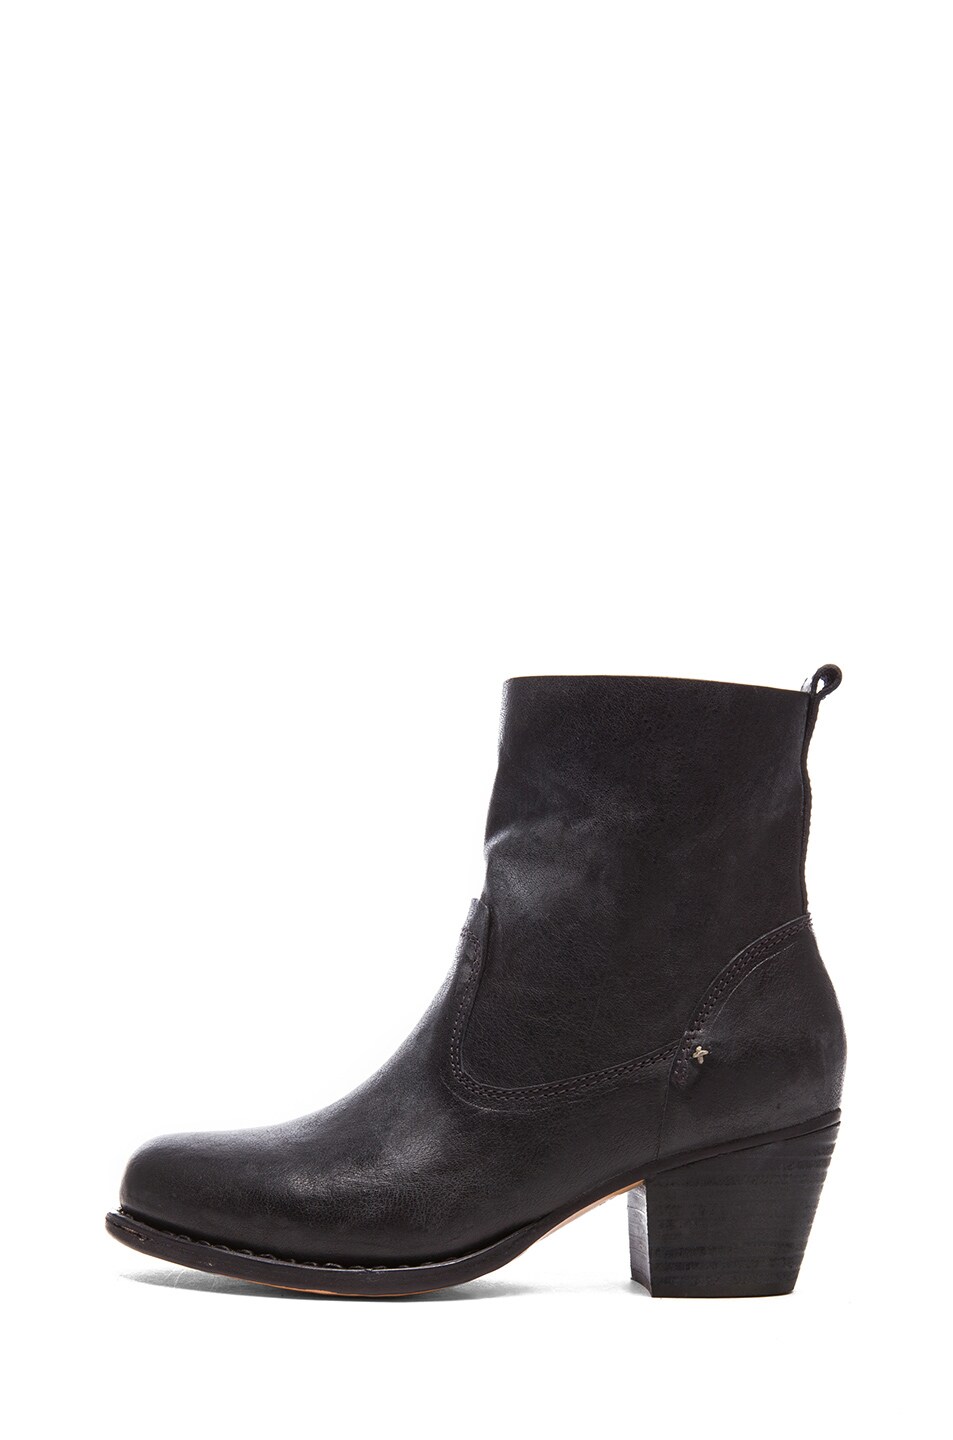 Rag & Bone Mercer Calfskin Leather Boots II in Black | FWRD